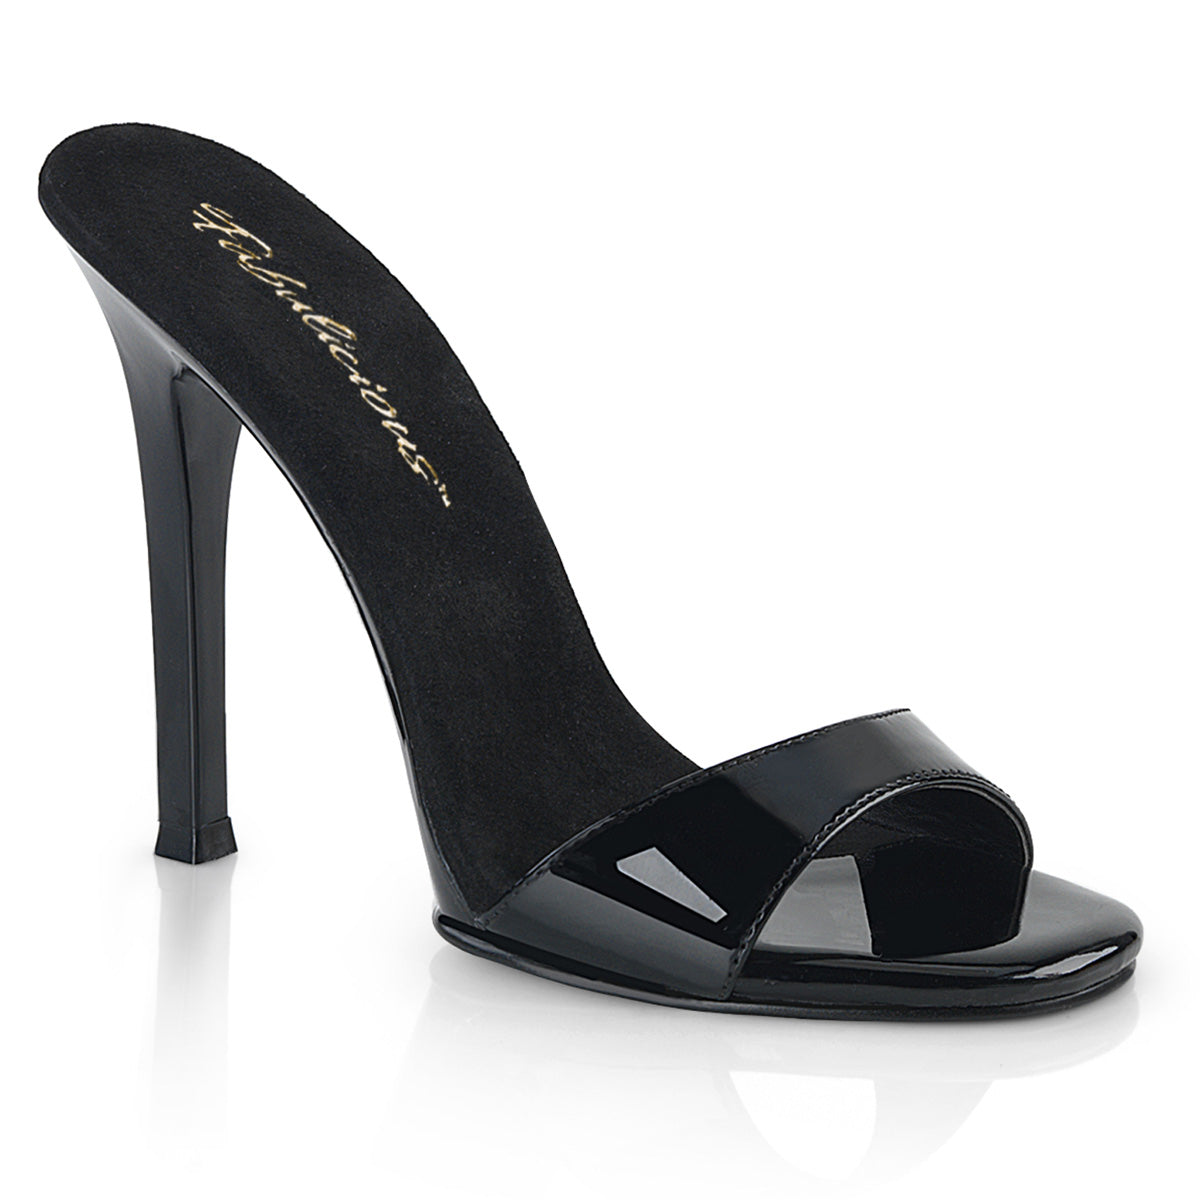 Gala-01s Fabulicious de 4.5 pulgadas Heel Patente Negro Zapatos Sexy